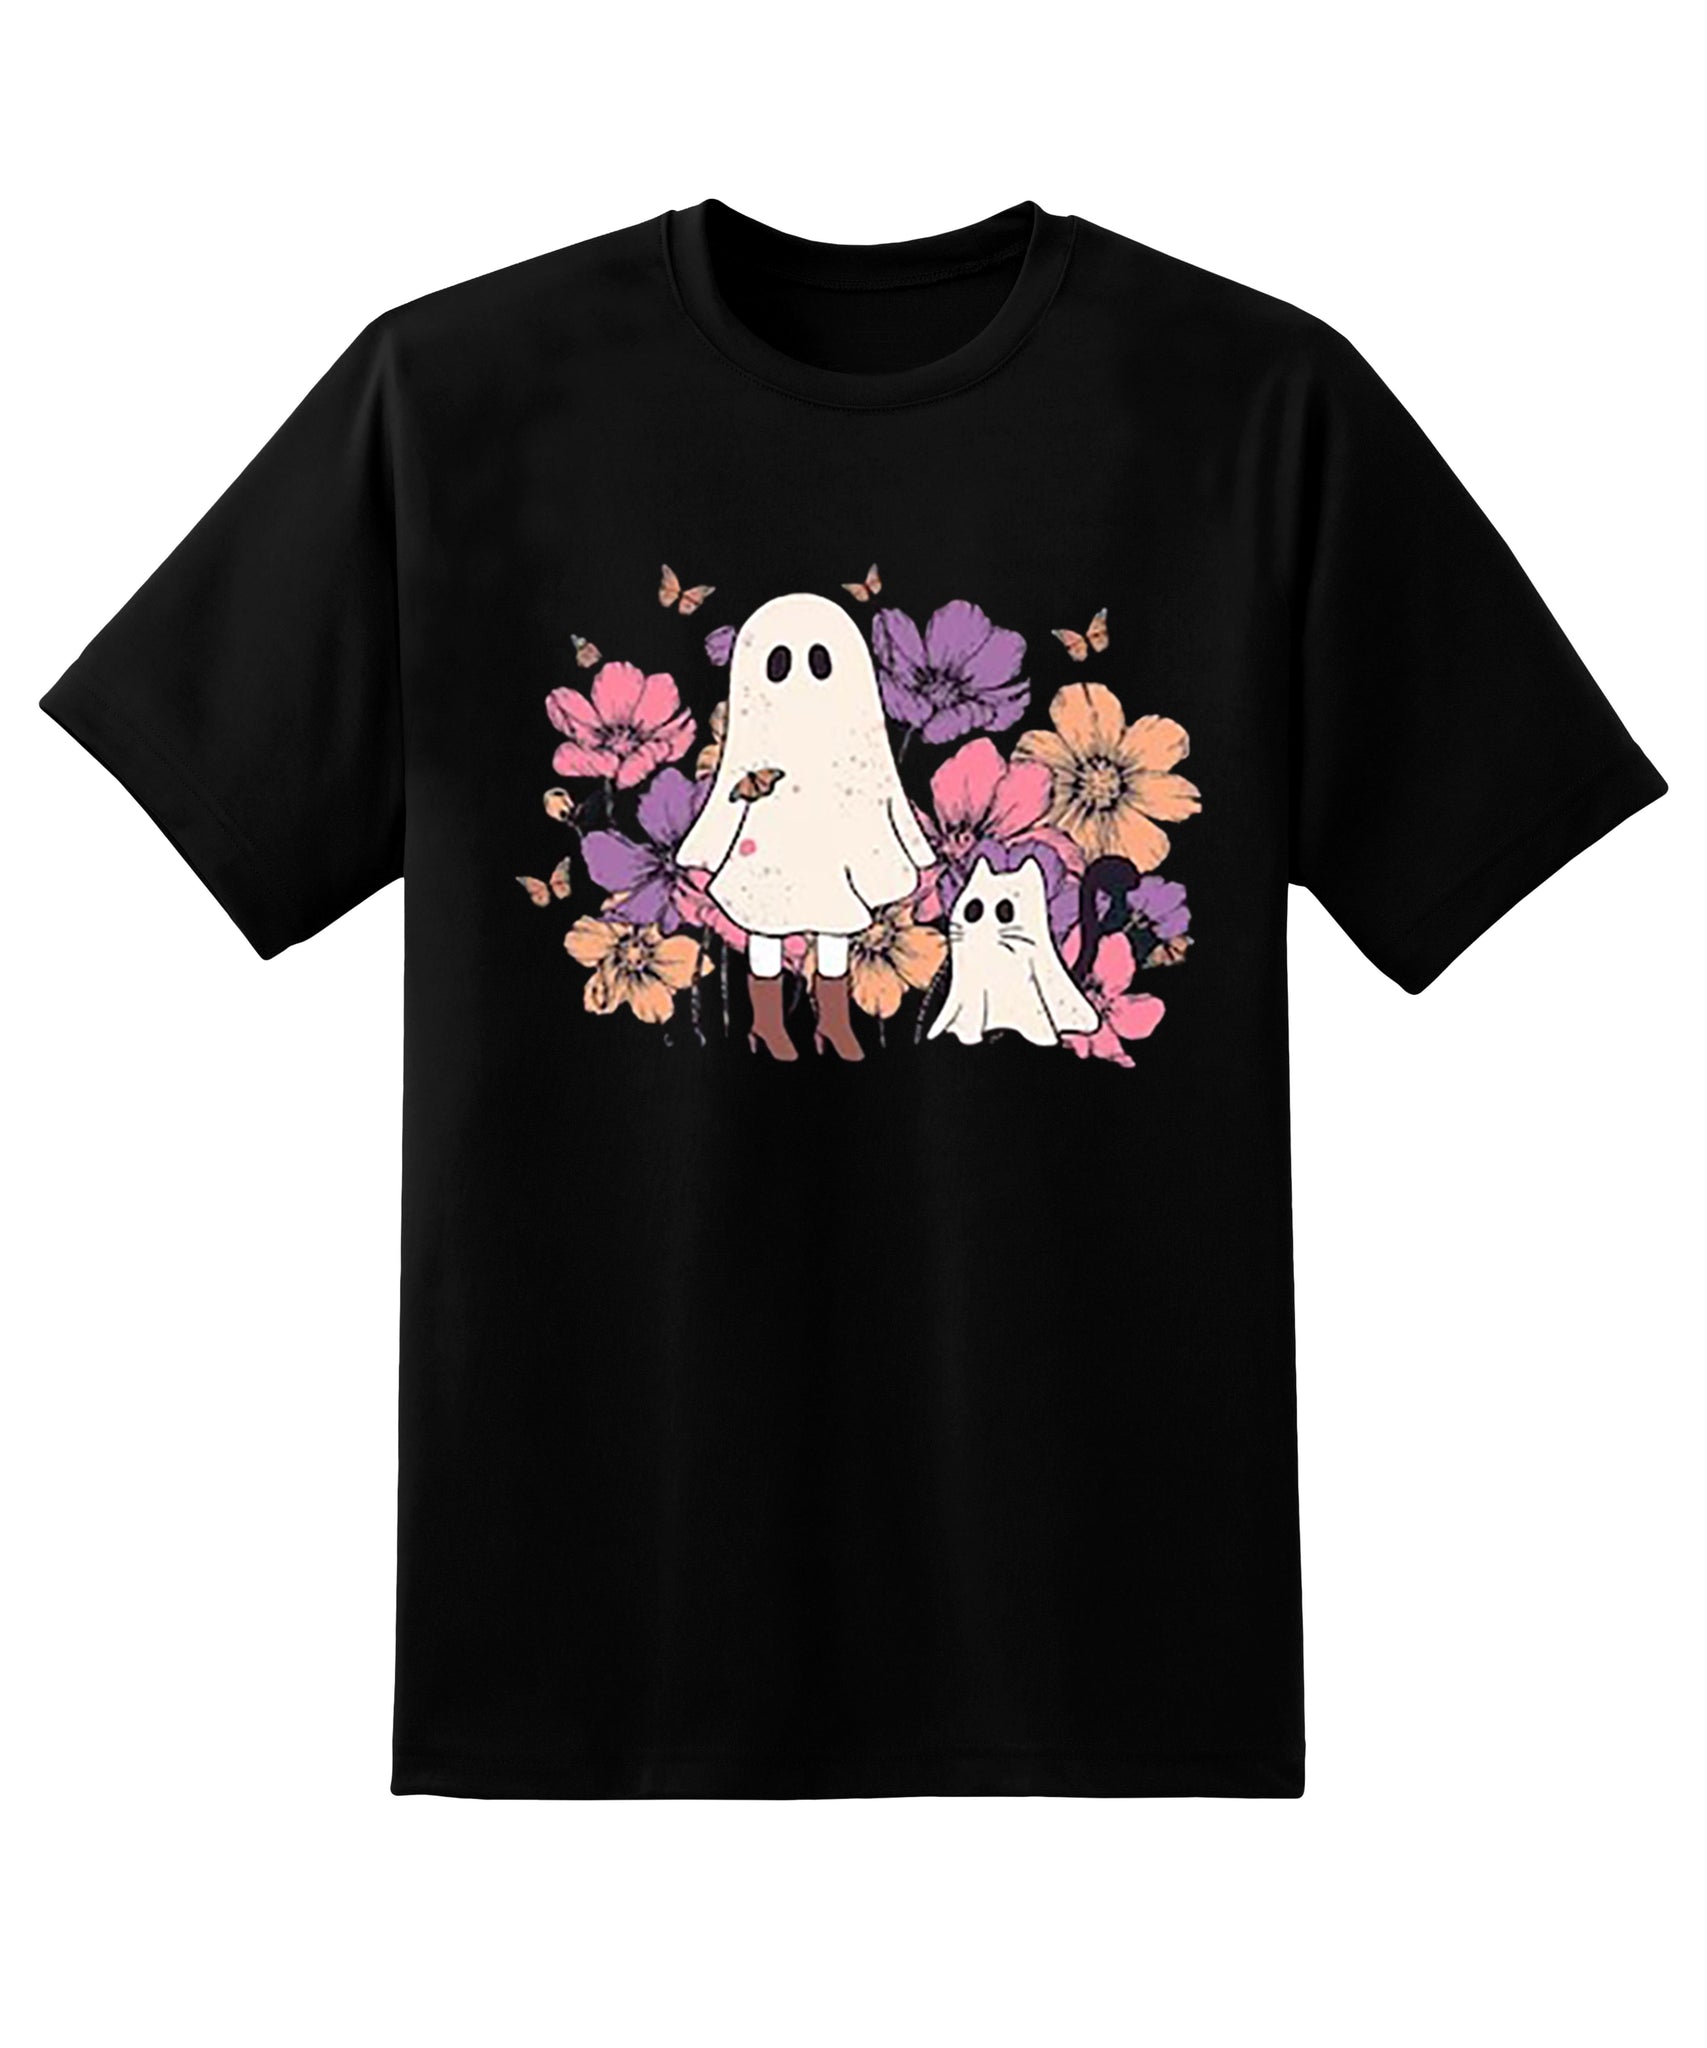 Skitongift Ghost Cat Halloween Shirt,Halloween Cat T-Shirt,Cat Pumpkin Shirt,Fall T-Shirt,Black Cat Shirt,Cat Lover Gift,Witch Cat Tee